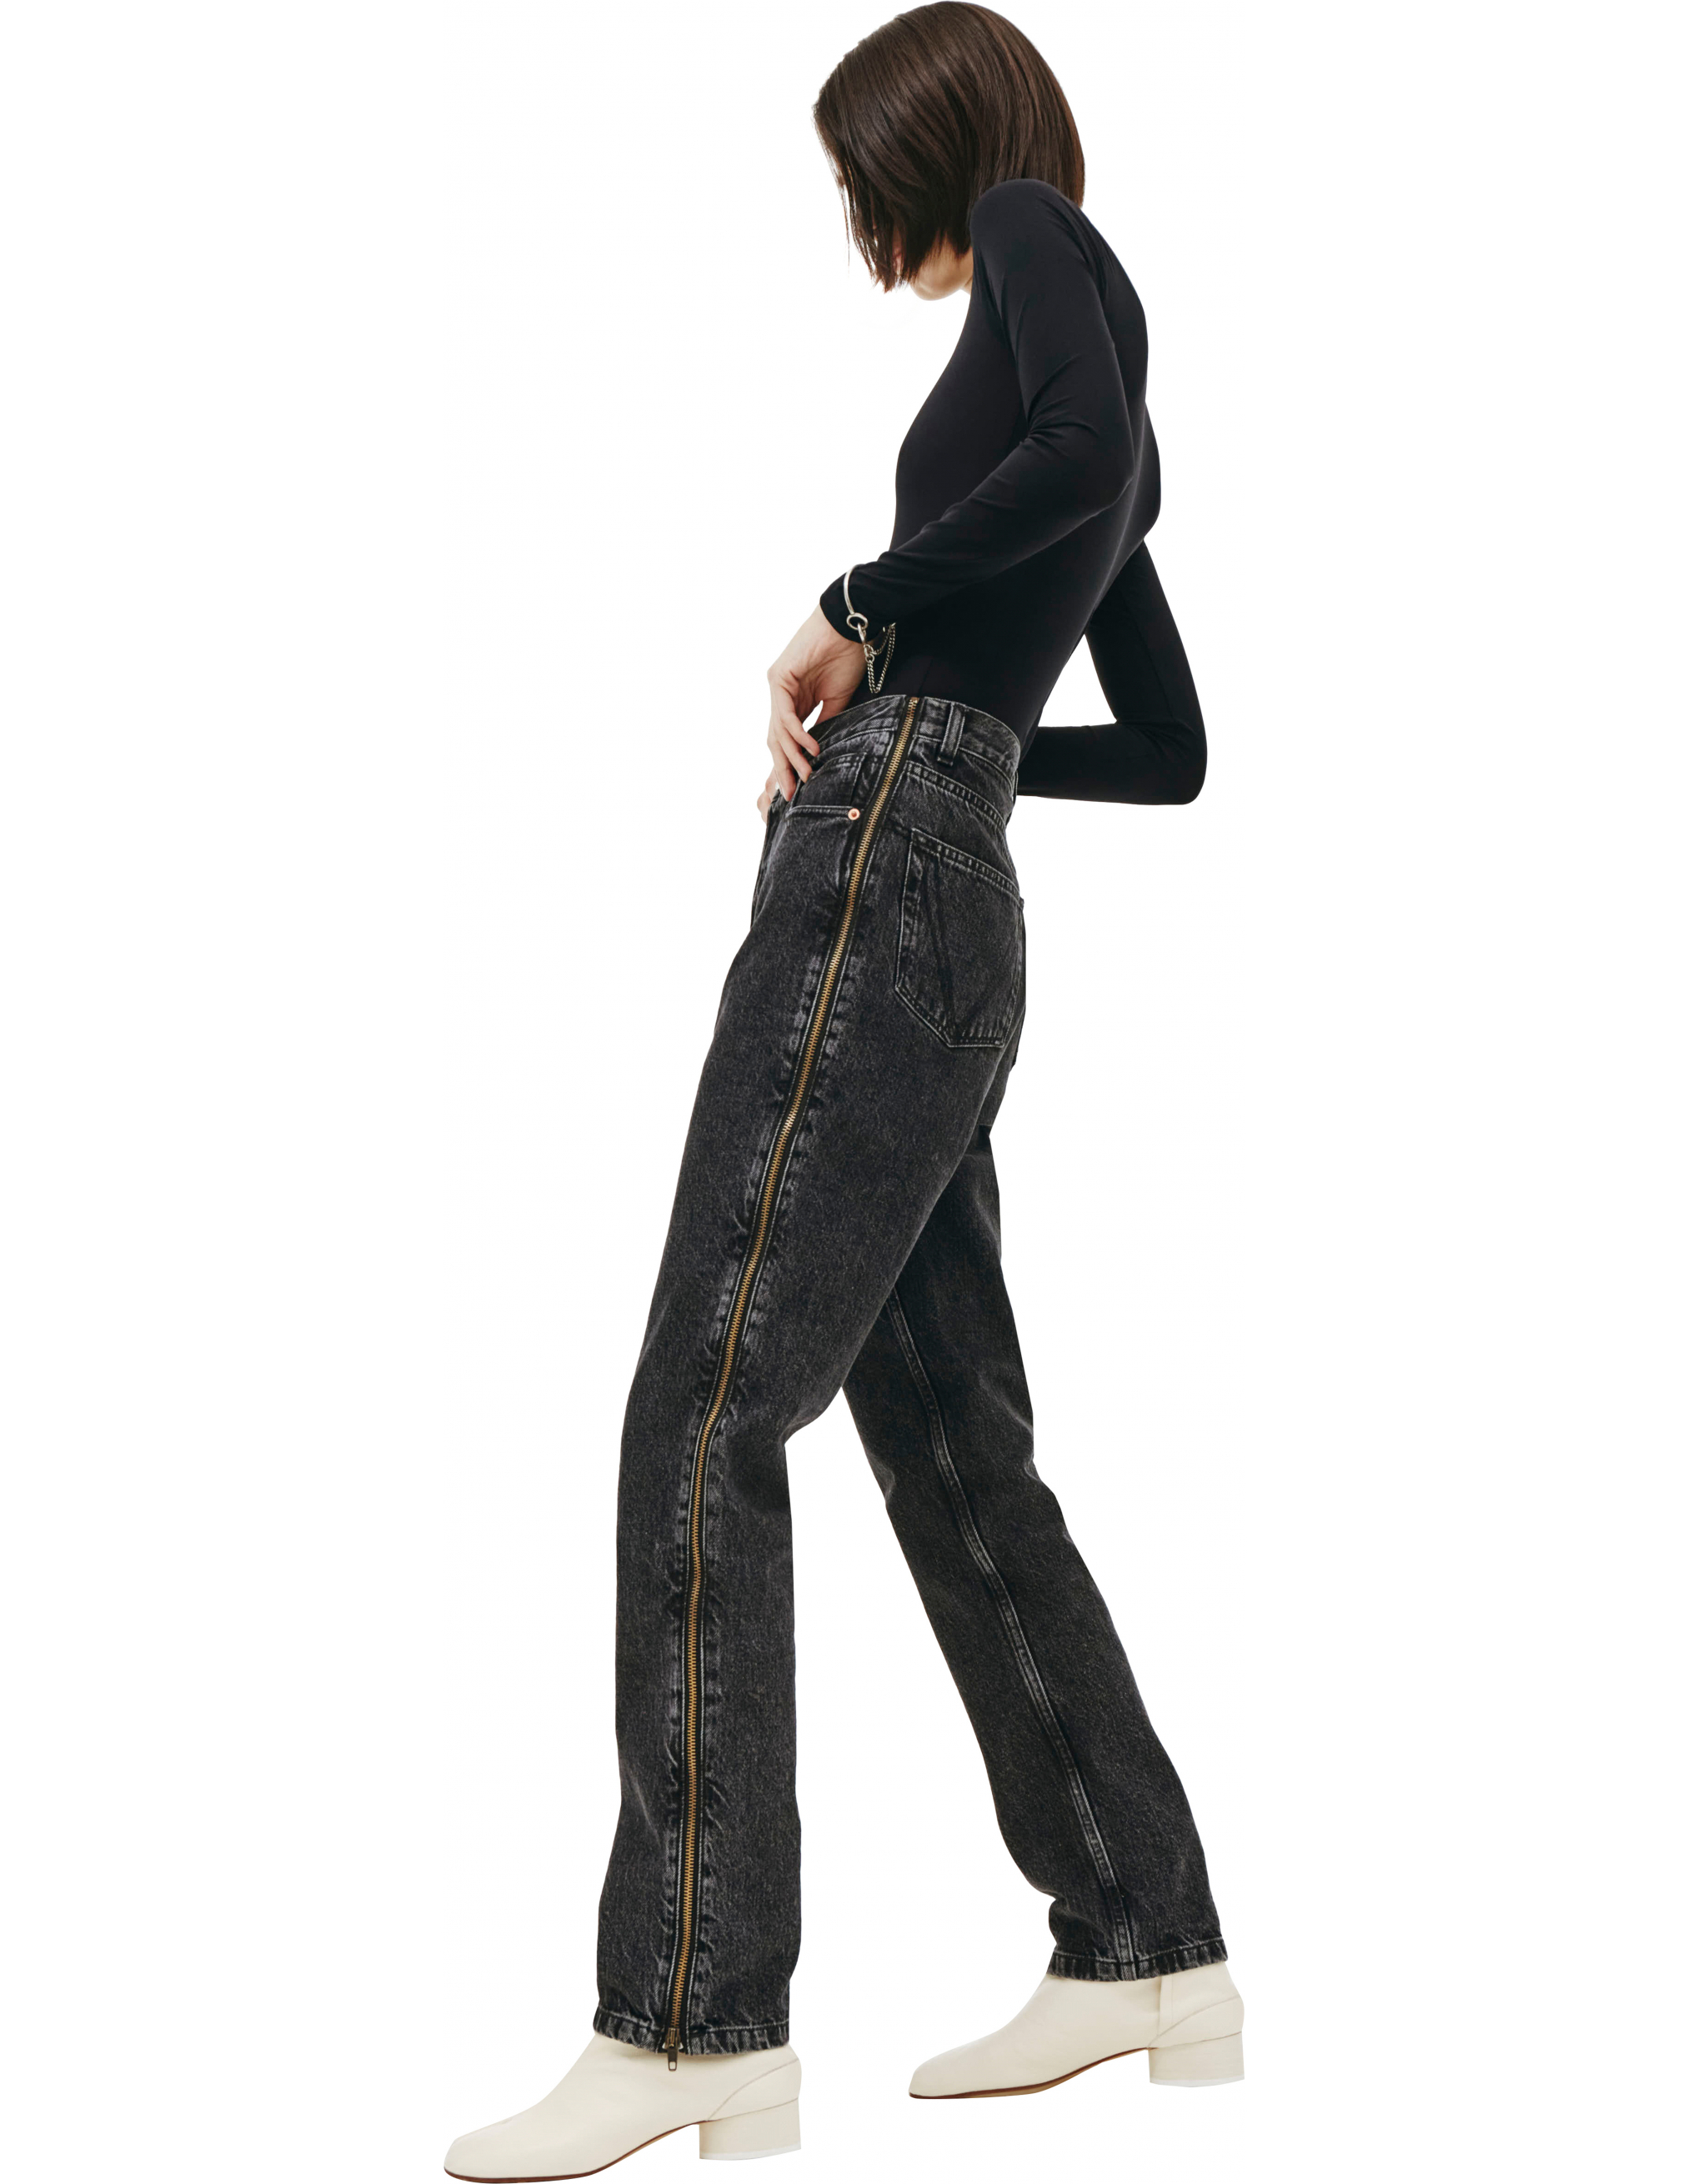 Черные джинсы с молниями по бокам - Vetements SS20PA332/blk Фото 3